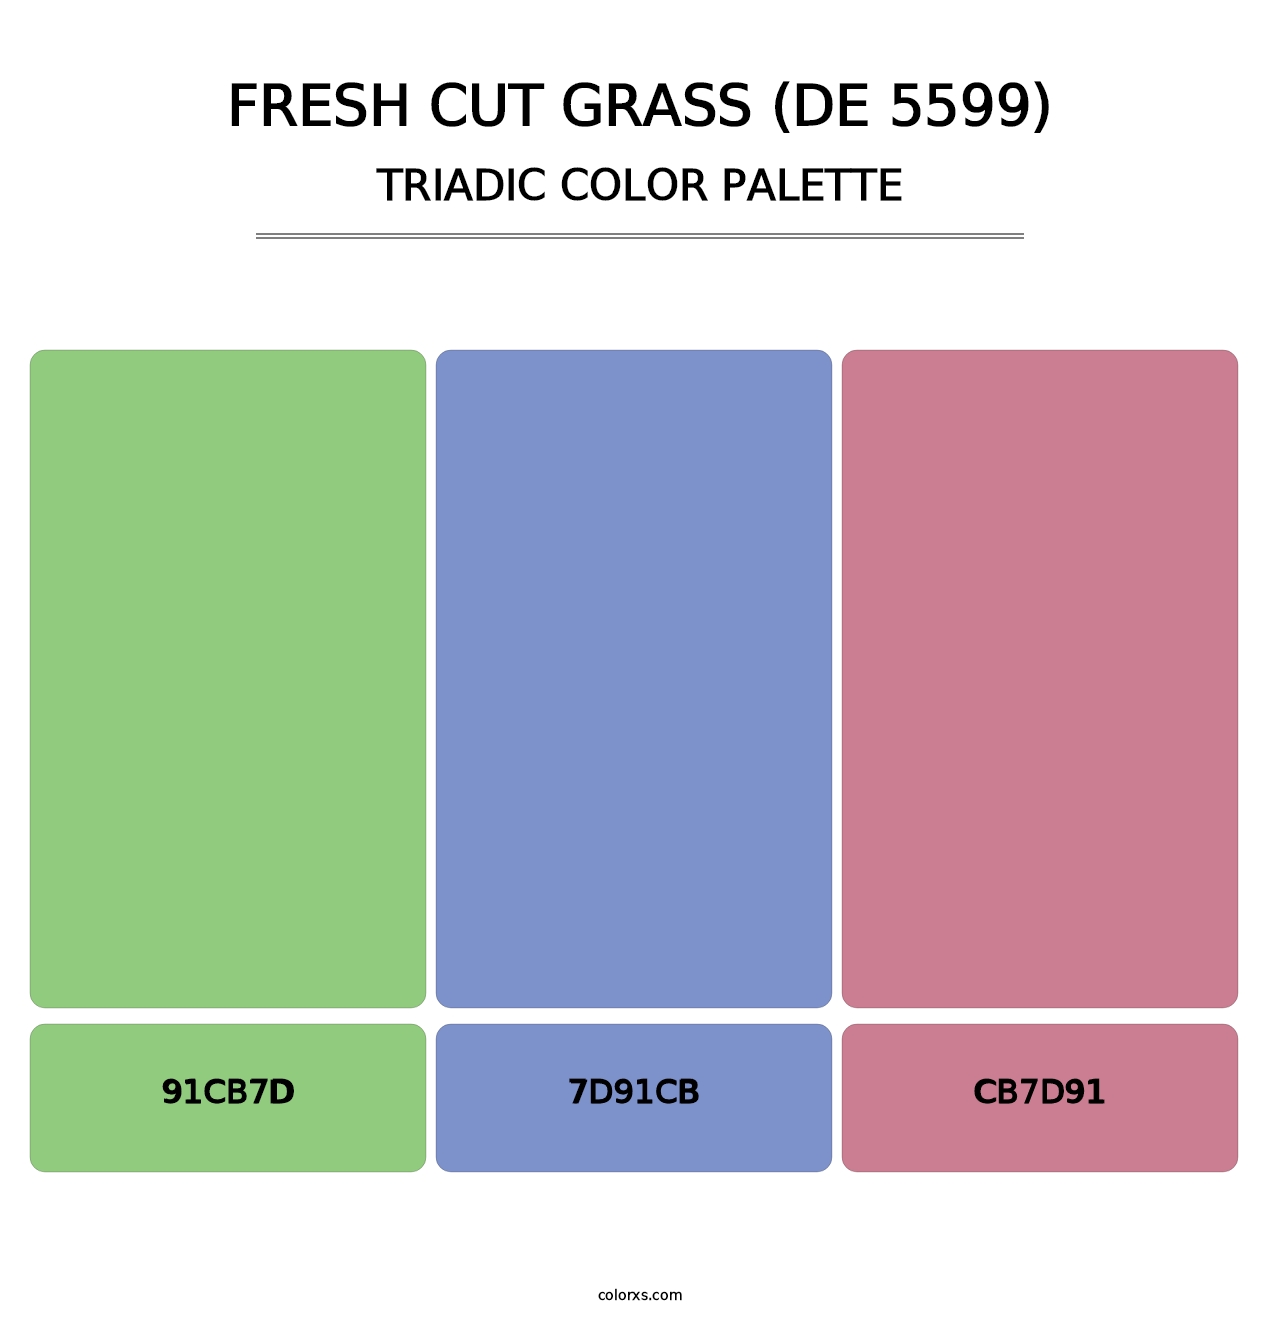 Fresh Cut Grass (DE 5599) - Triadic Color Palette